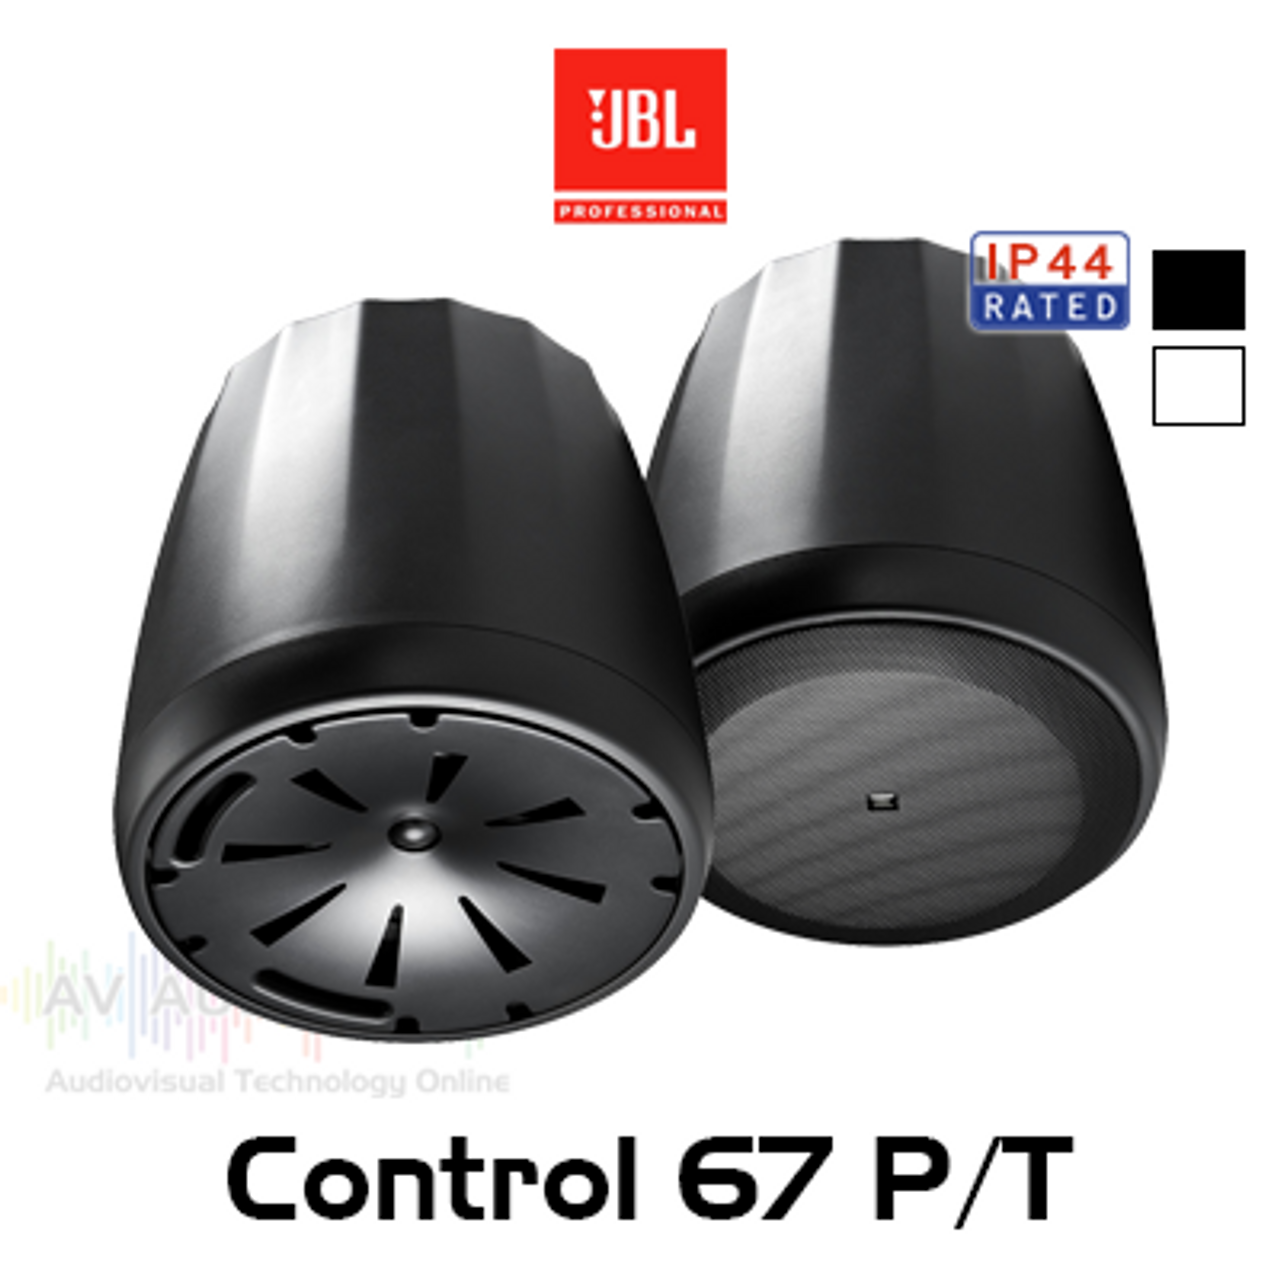 JBL Control 67 P/T 6.5" Full Range 8 ohm 70/100V Extended Range Pendant Speakers (Pair)